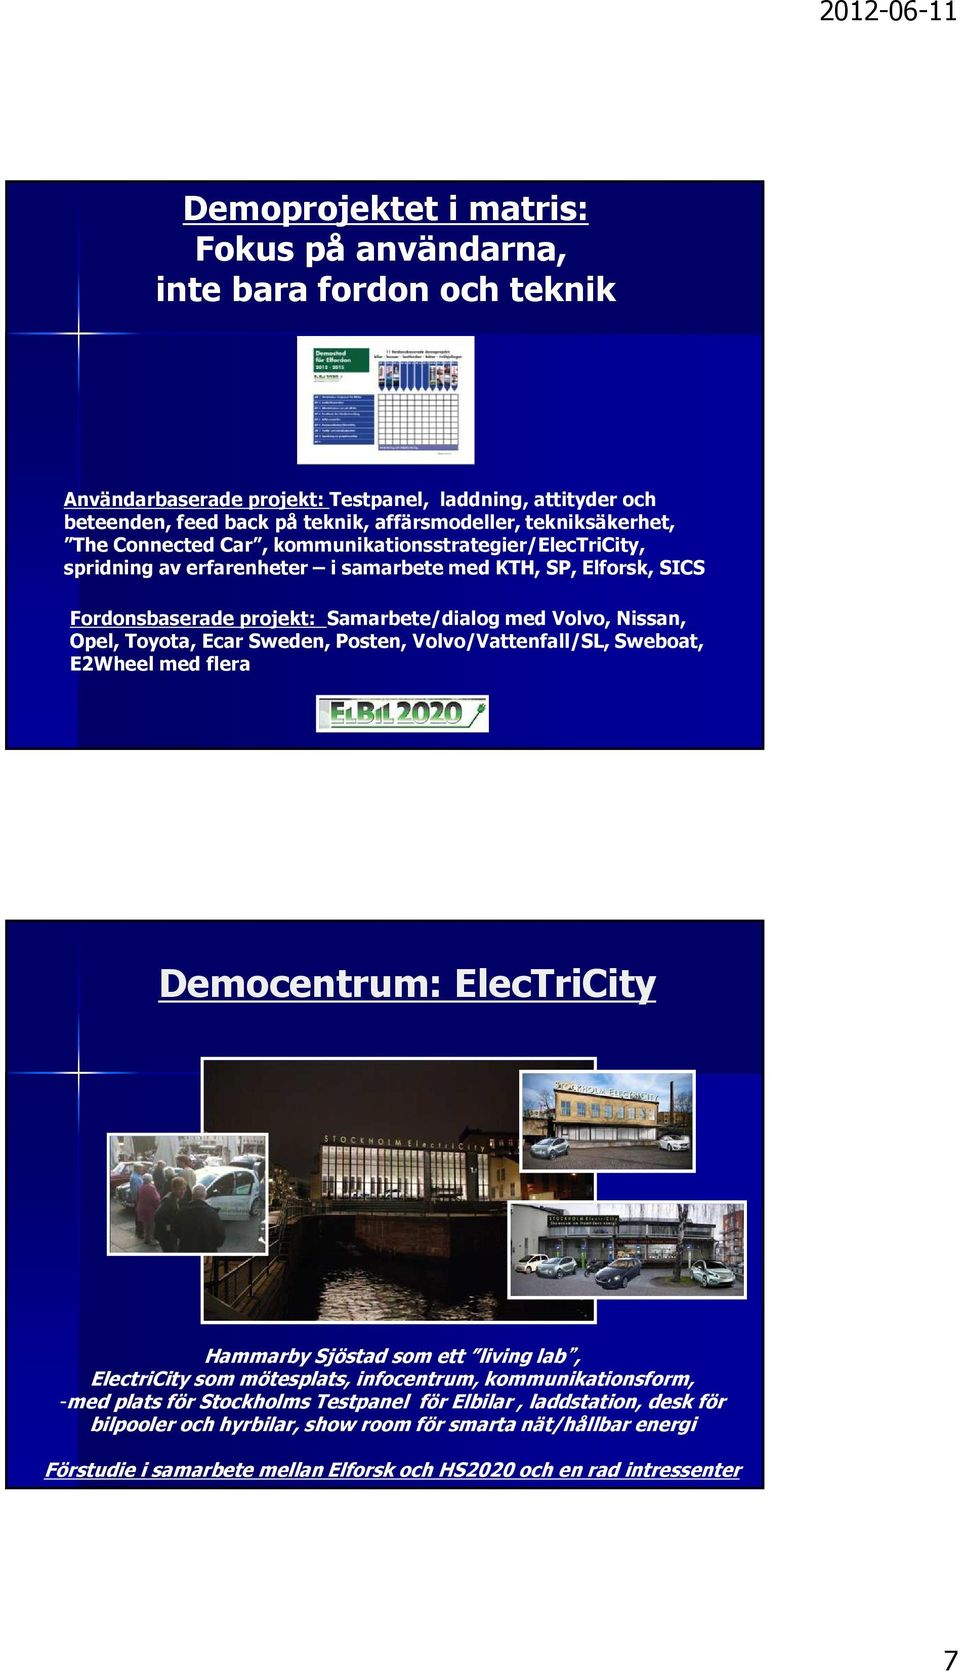 Ecar Sweden, Posten, Volvo/Vattenfall/SL, Sweboat, E2Wheel med flera Democentrum: ElecTriCity Hammarby Sjöstad som ett living lab, ElectriCity som mötesplats, infocentrum, kommunikationsform, -med